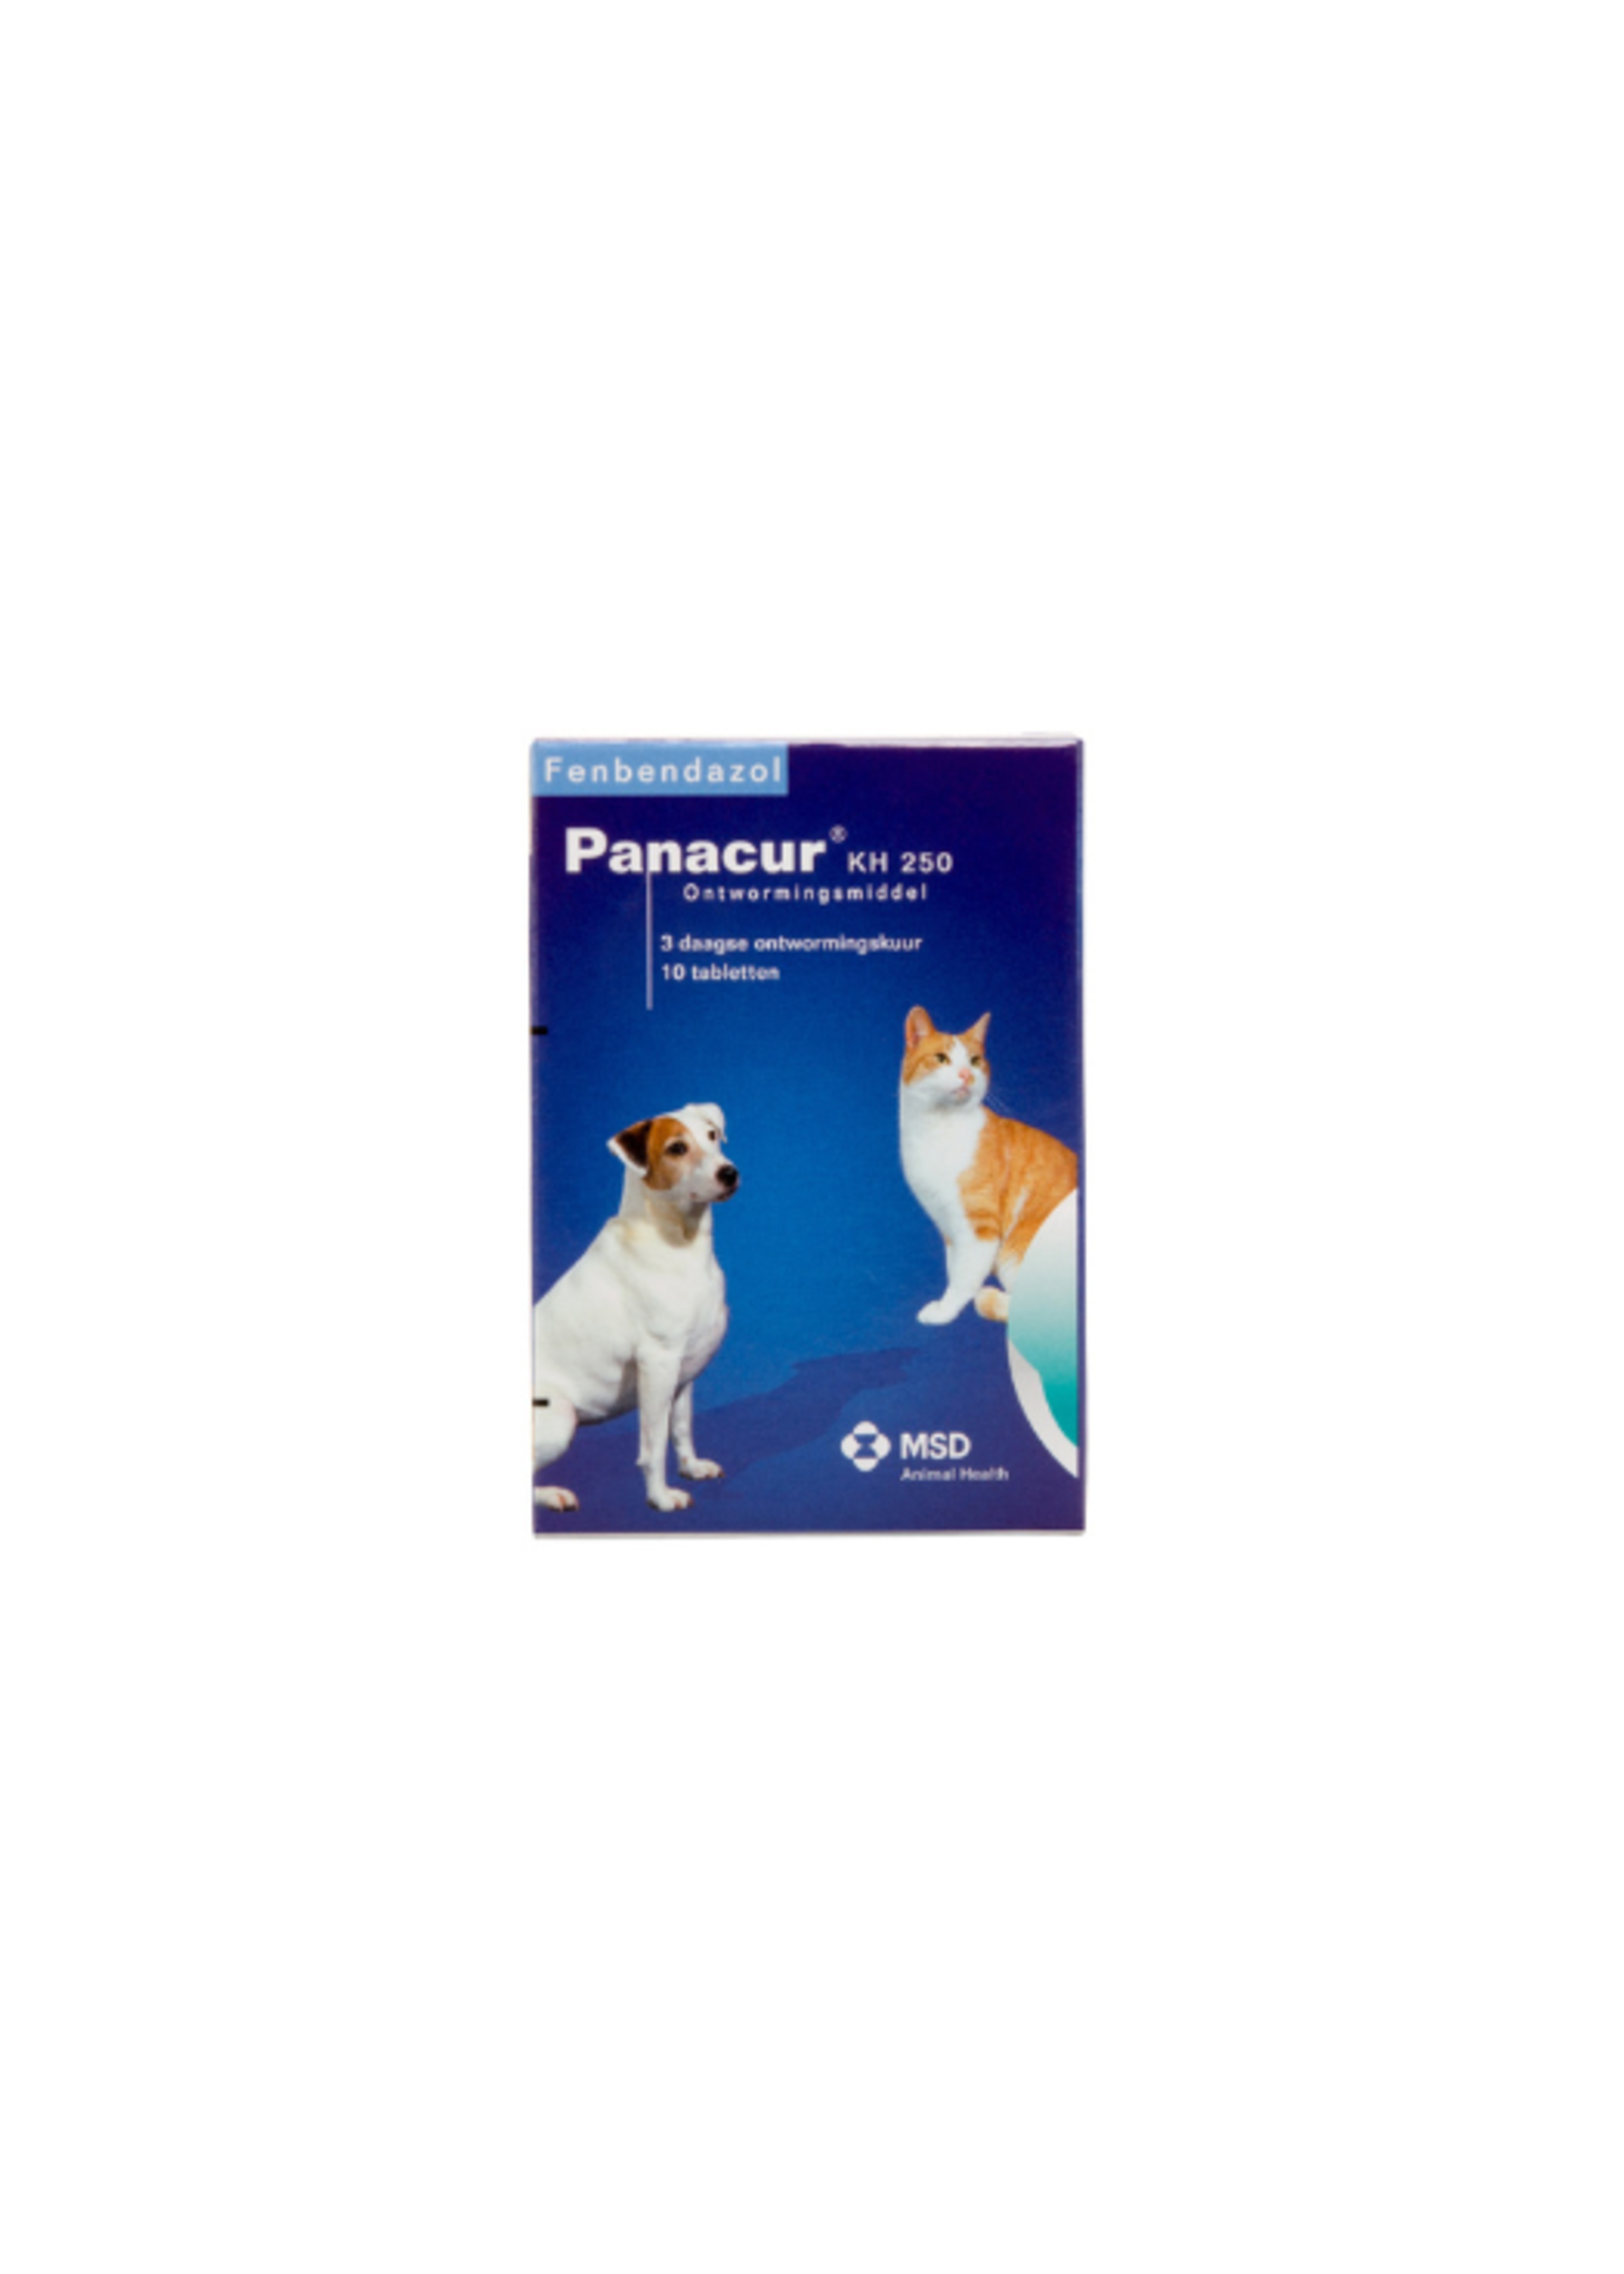 Panacur KH 250 | Ontwormingstabletten voor honden en katten